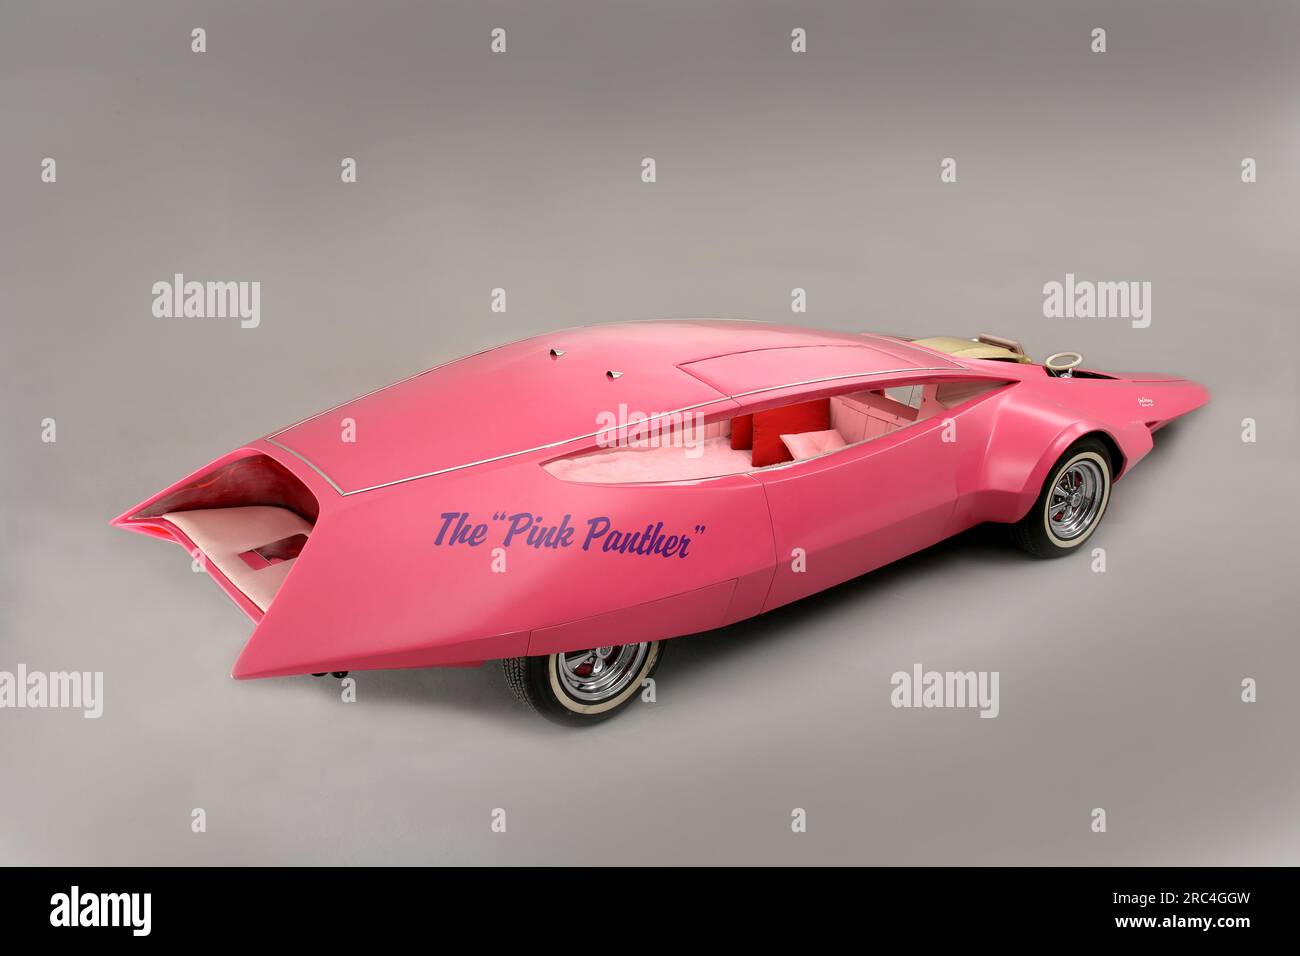 Pink Panther car Stock Photo